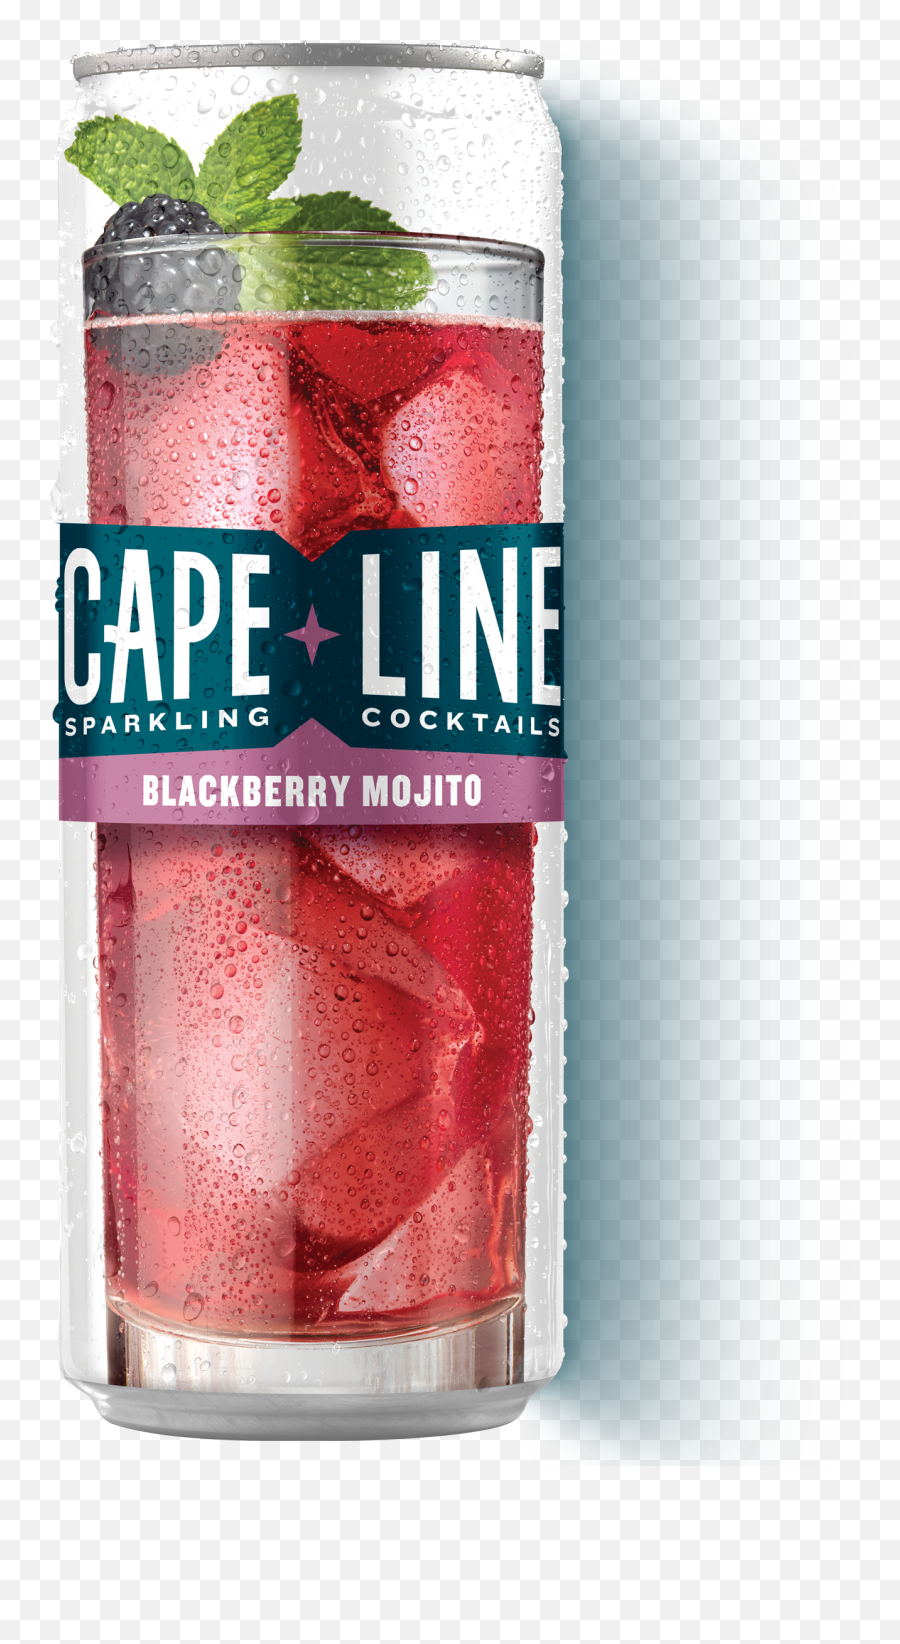 Home Cape Line Sparkling Cocktails - Grape Line Sparkling Cocktail Png,Cocktails Png